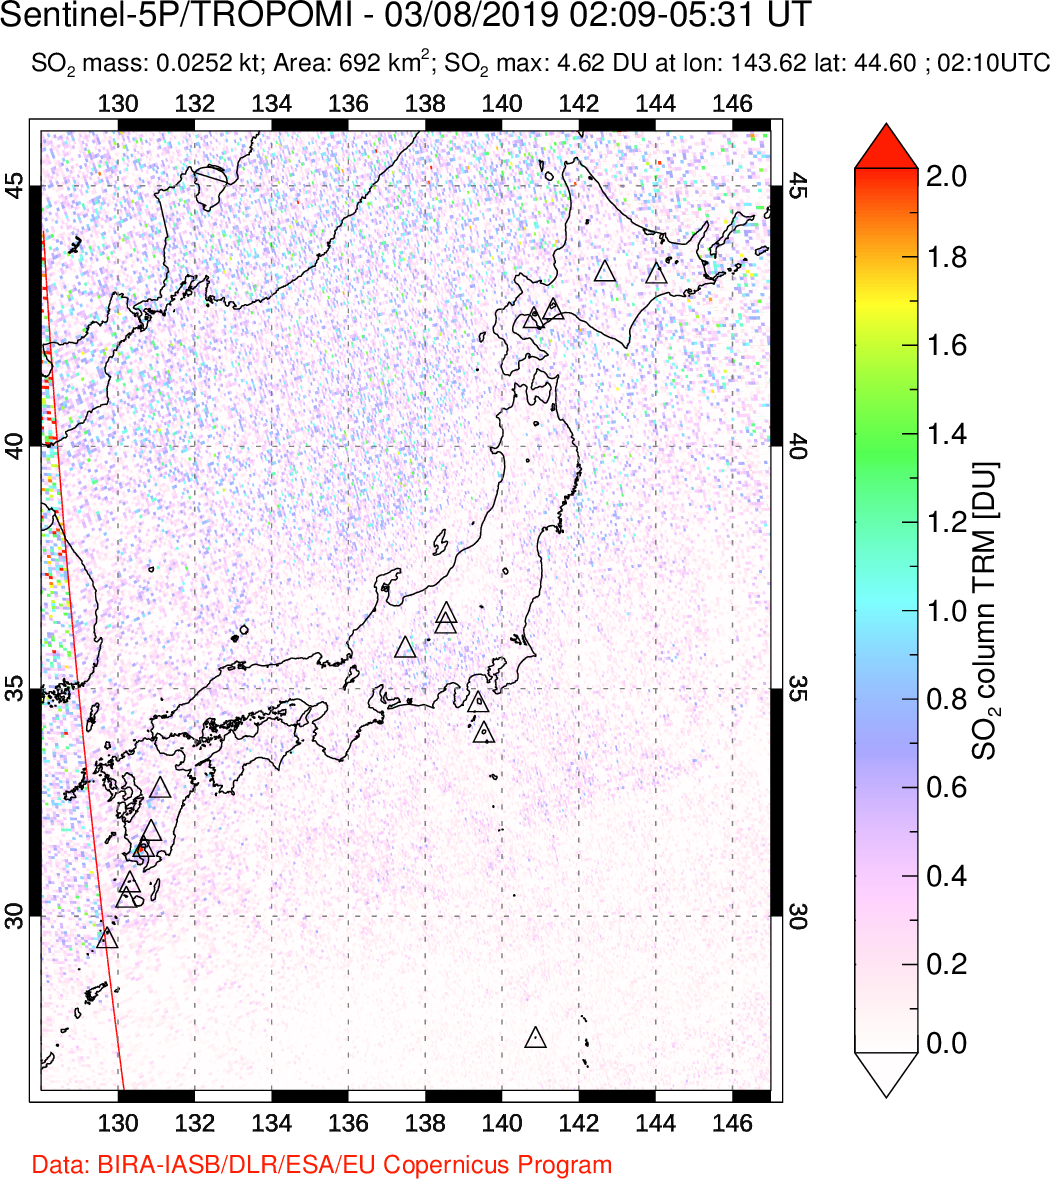 A sulfur dioxide image over Japan on Mar 08, 2019.